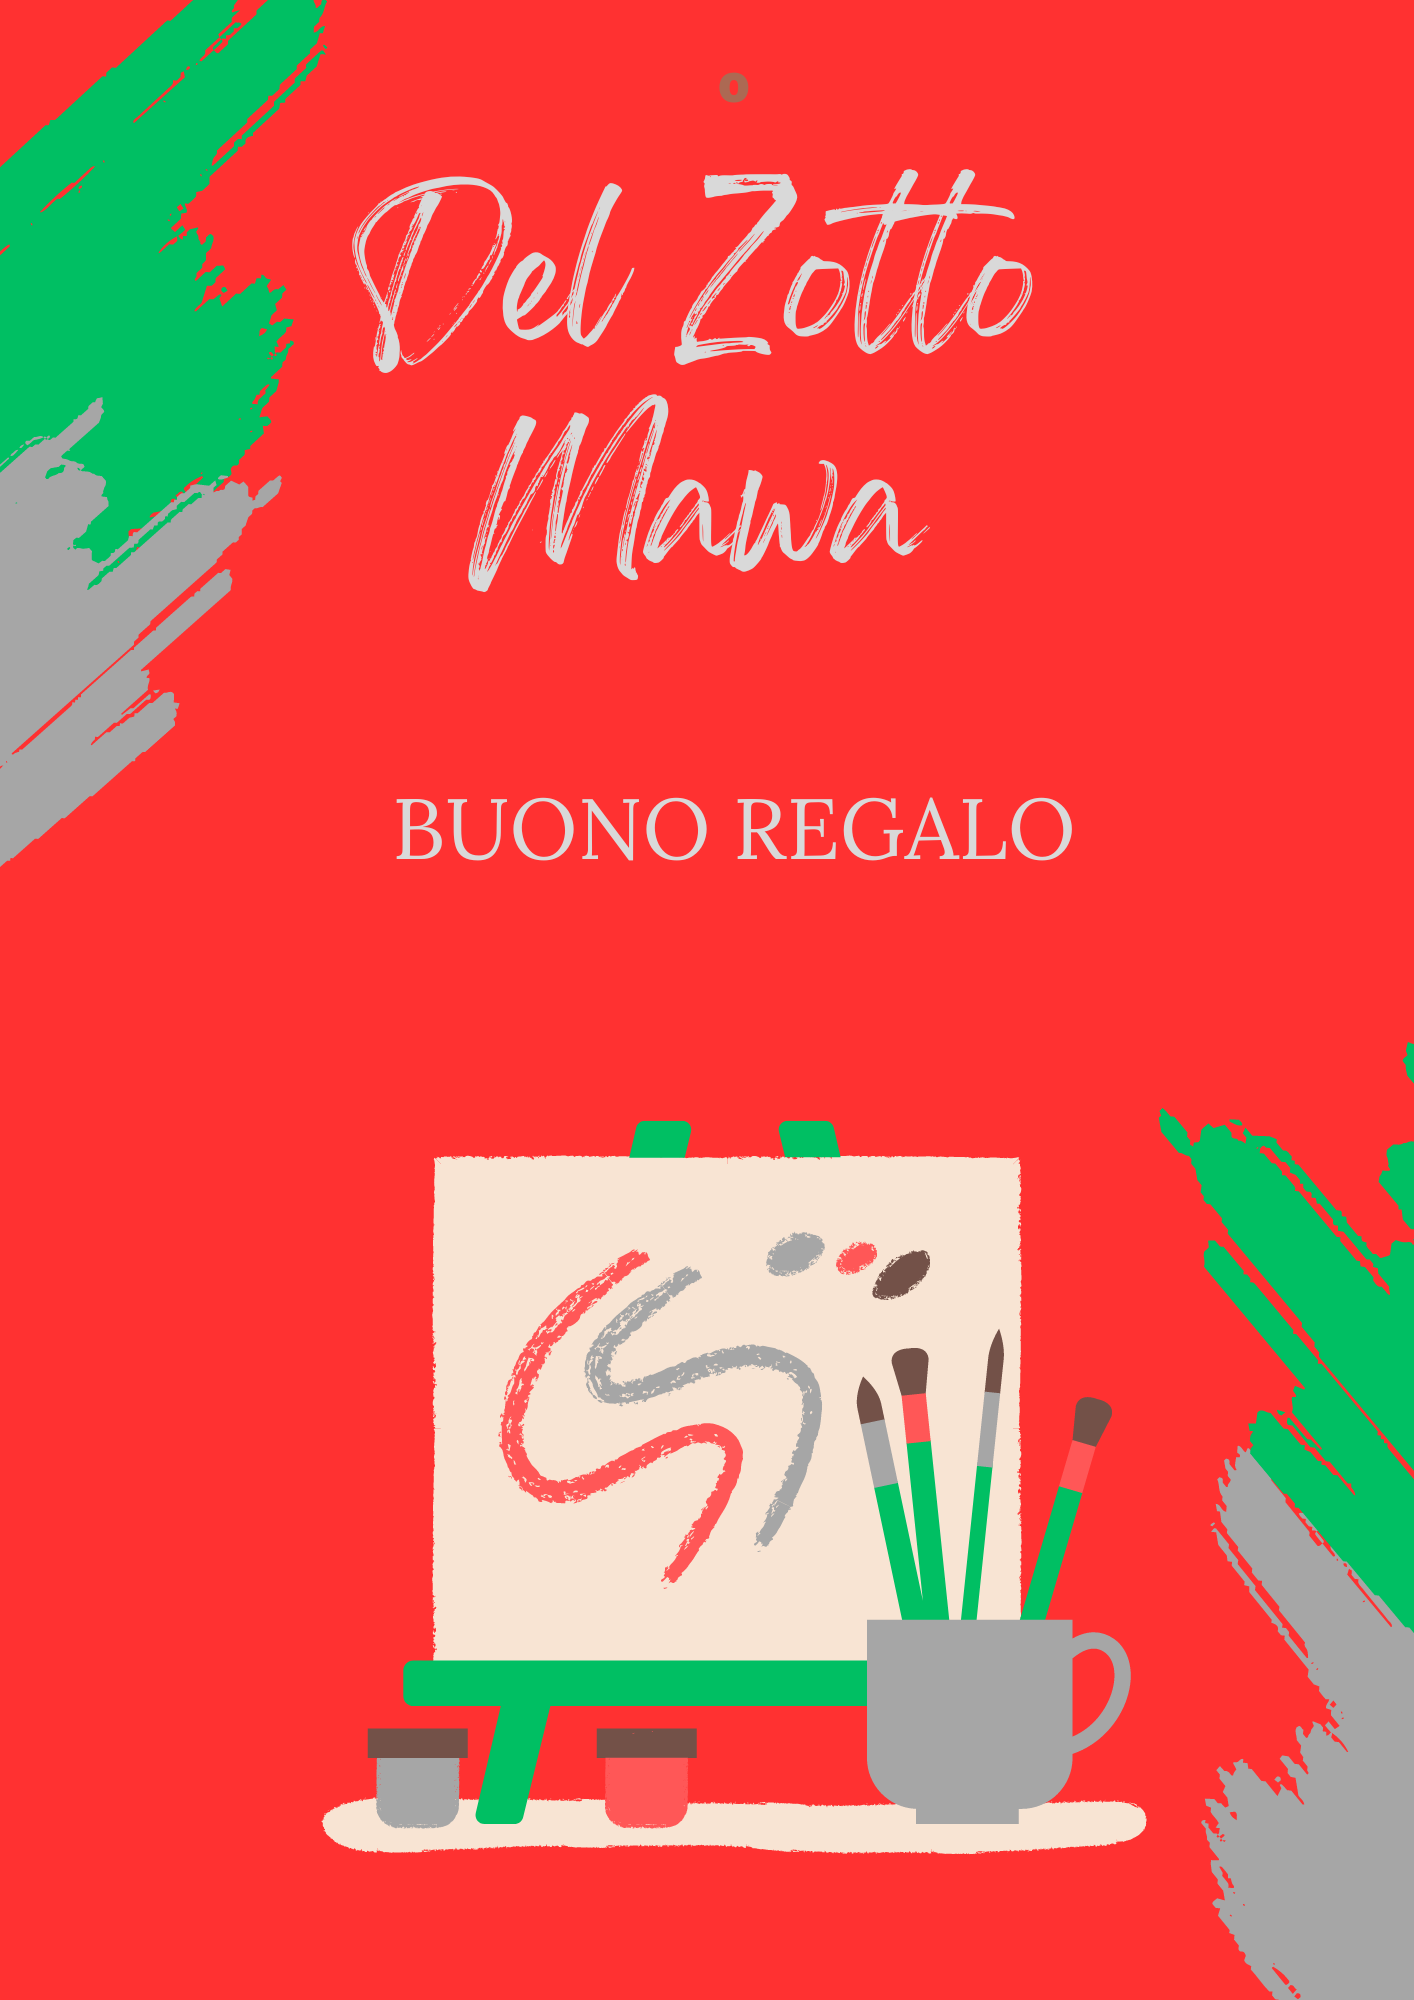 Del Zotto Mawa Buono Regalo Online